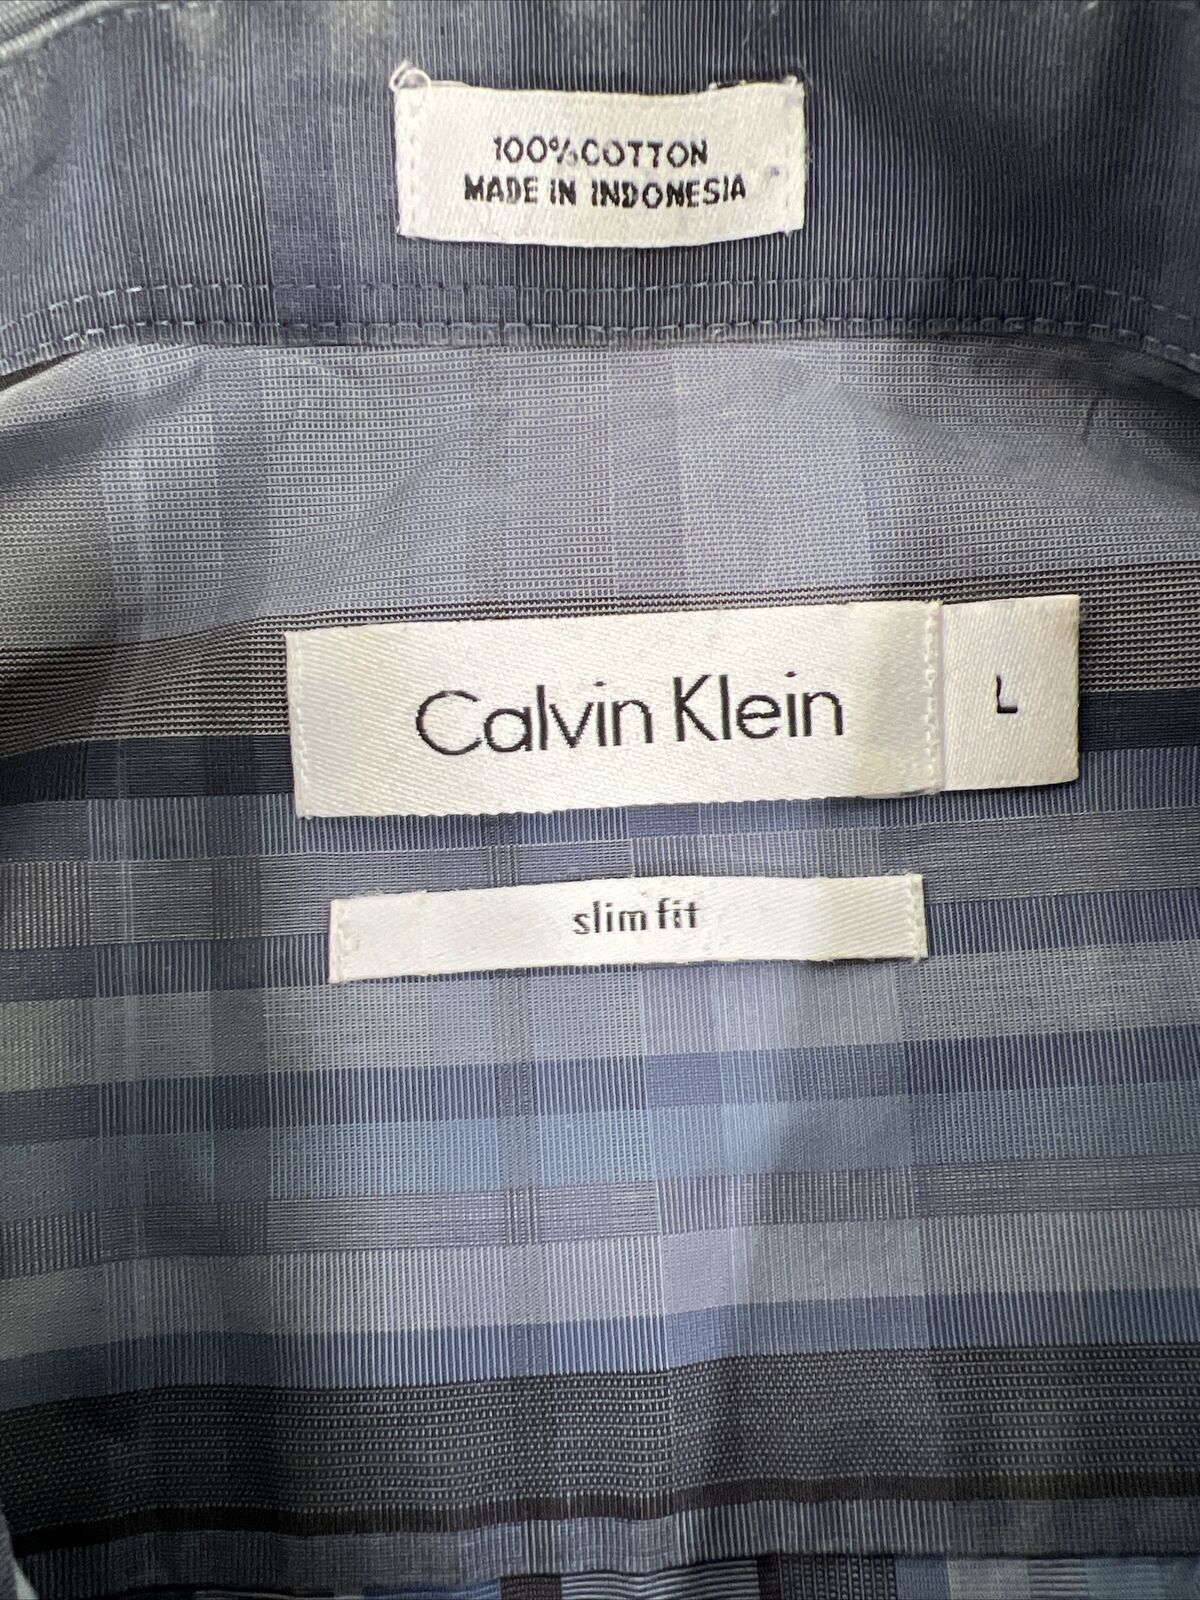 Calvin Klein Men's Blue Plaid Slim Fit Button Up Shirt - L